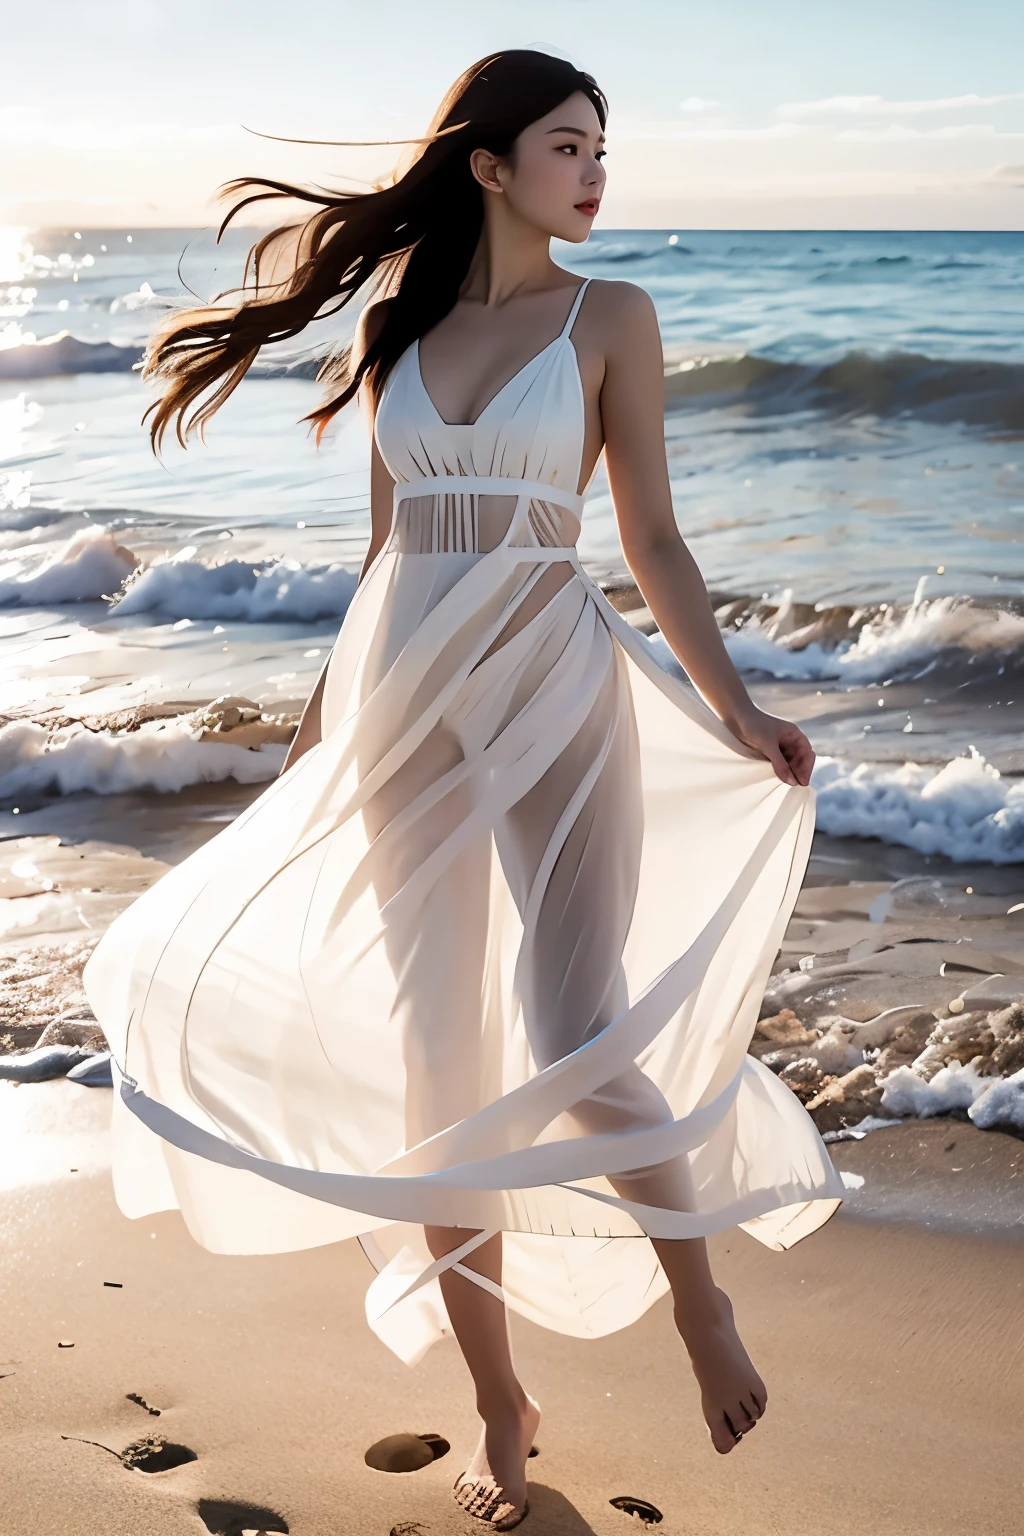 在海滩上奔跑, (傑作, 最好的品質:1.2), 1個女孩,, 獨自的, 精緻的臉, 白皮肤女性, 透視剪影, 白色禮服, 全身, 戶外的, 